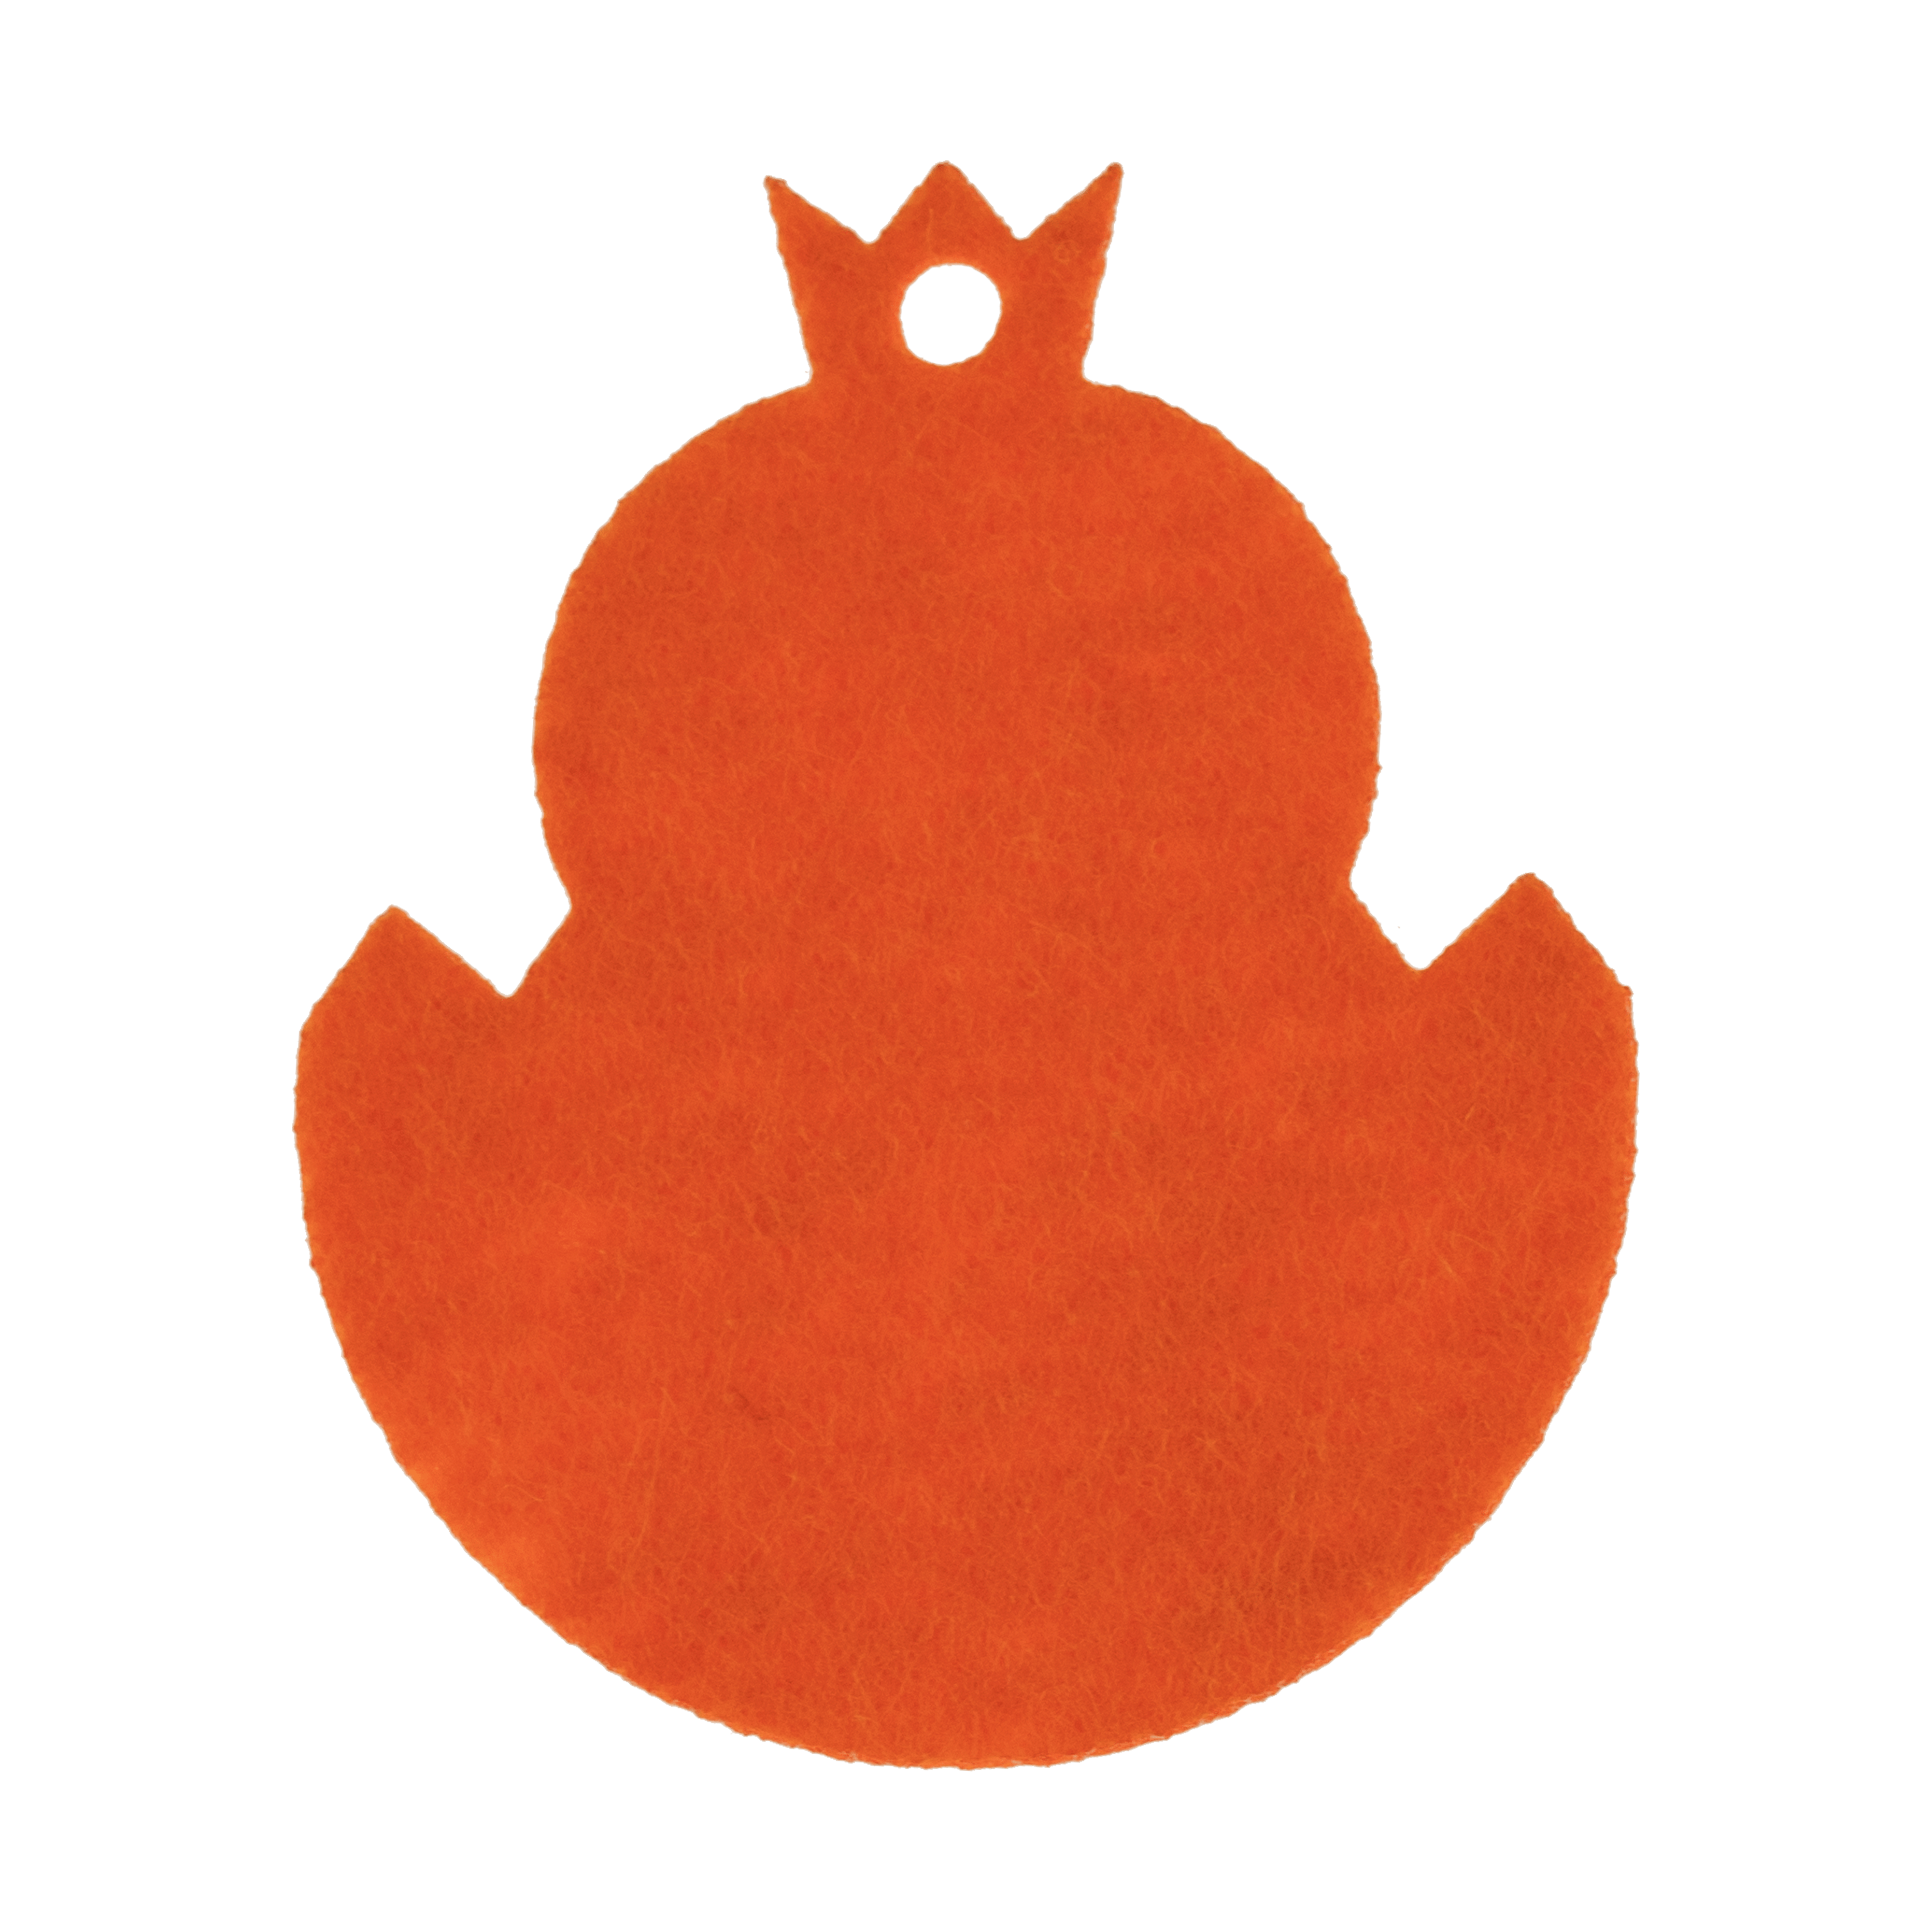 paaskuiken-vilt-oranje